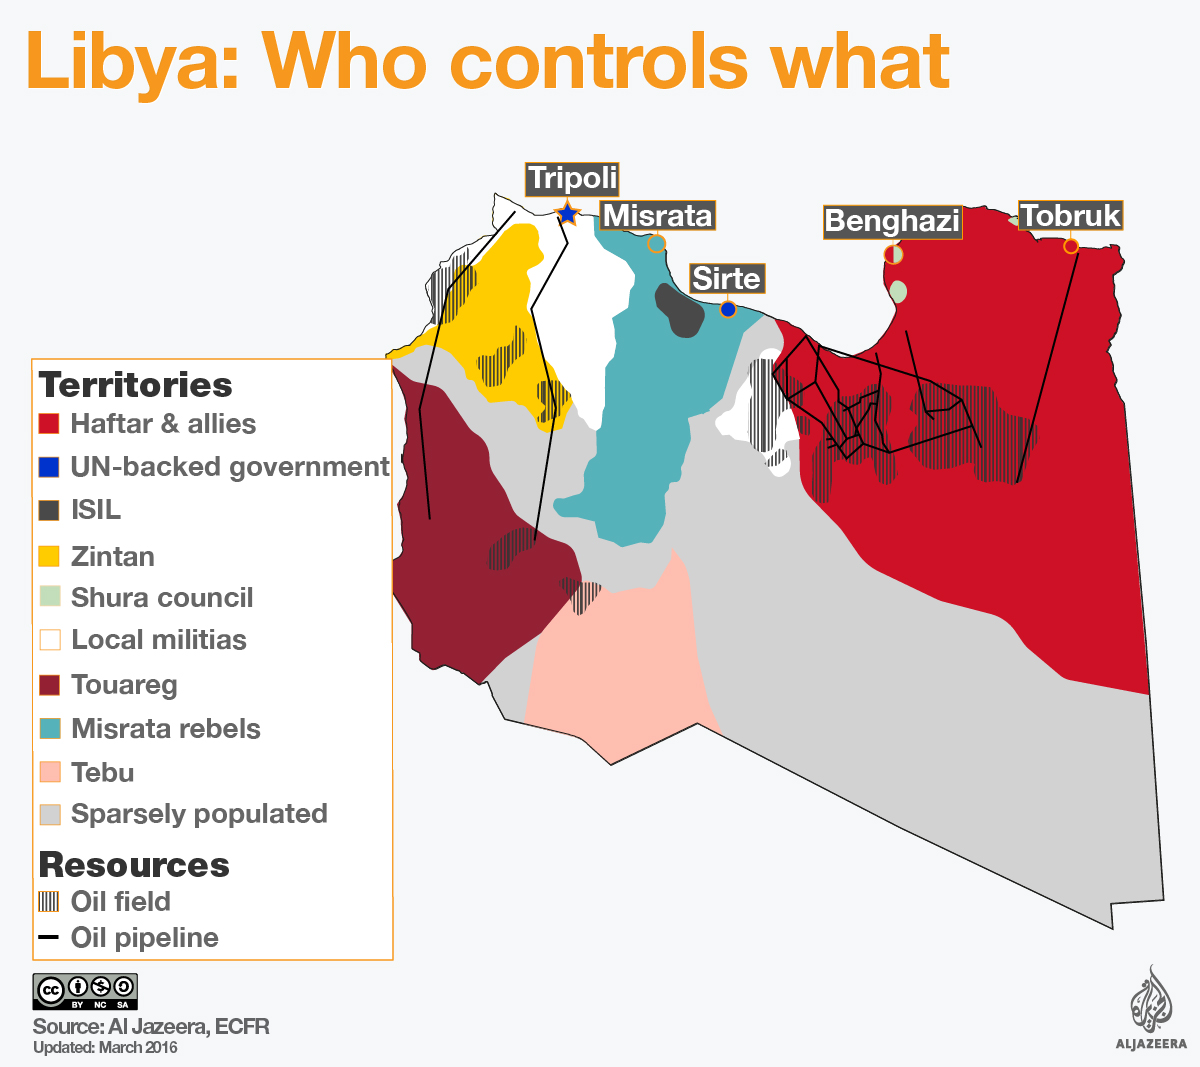 Geografía de Libia generalidades La guía de Geografía